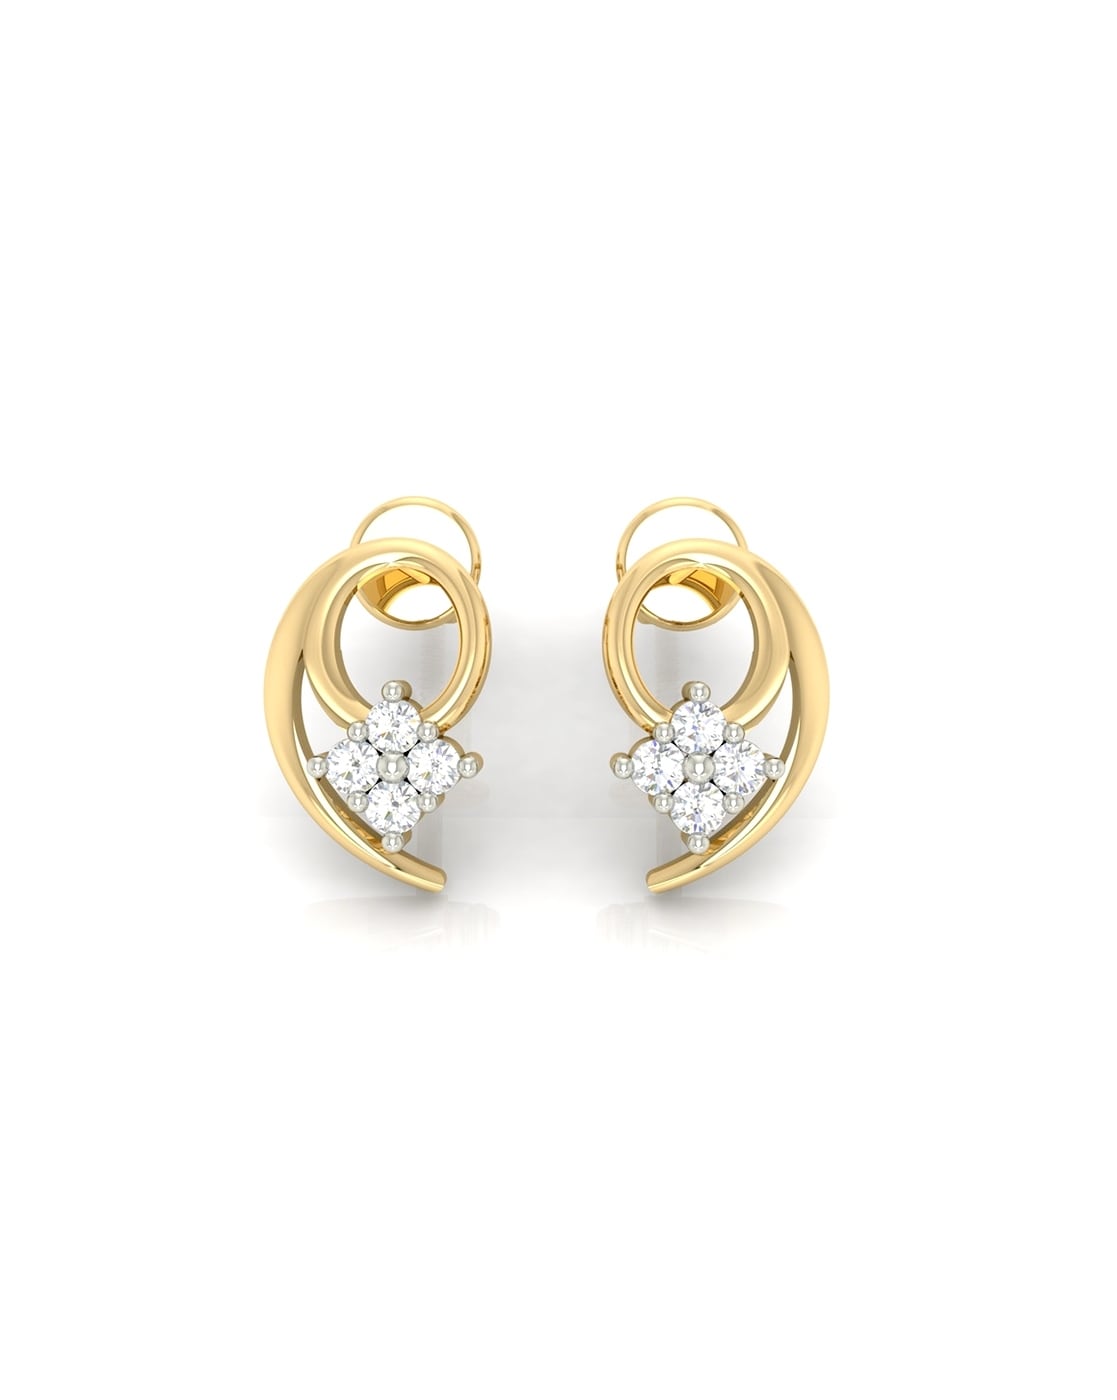 Buy quality 916 Gold Ladies Tops Earrings LTE302 in Ahmedabad